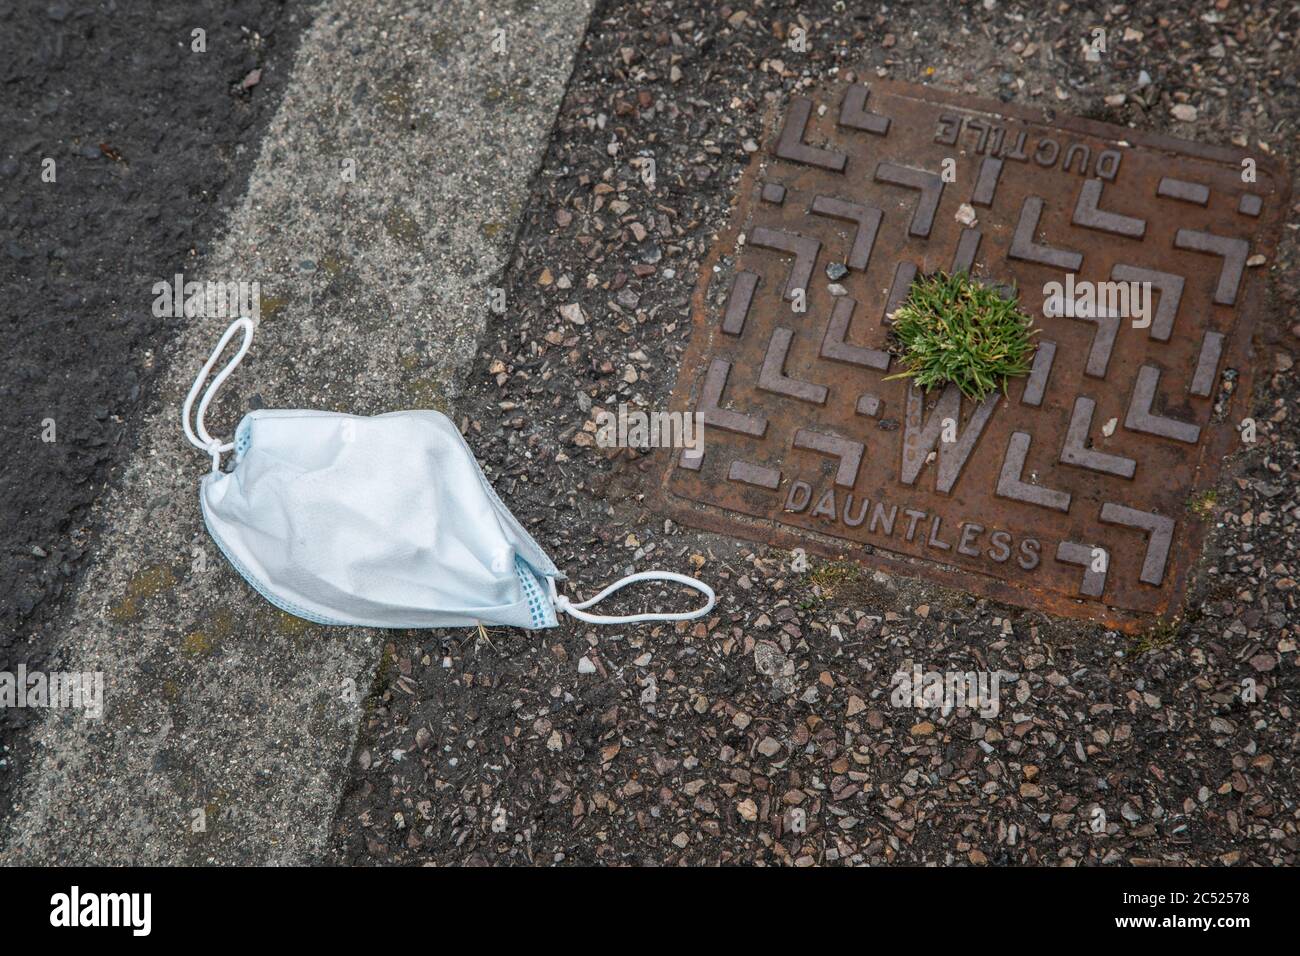 Masque de coronavirus jeté dans la rue à côté d'une couverture de drain sans dayte Banque D'Images